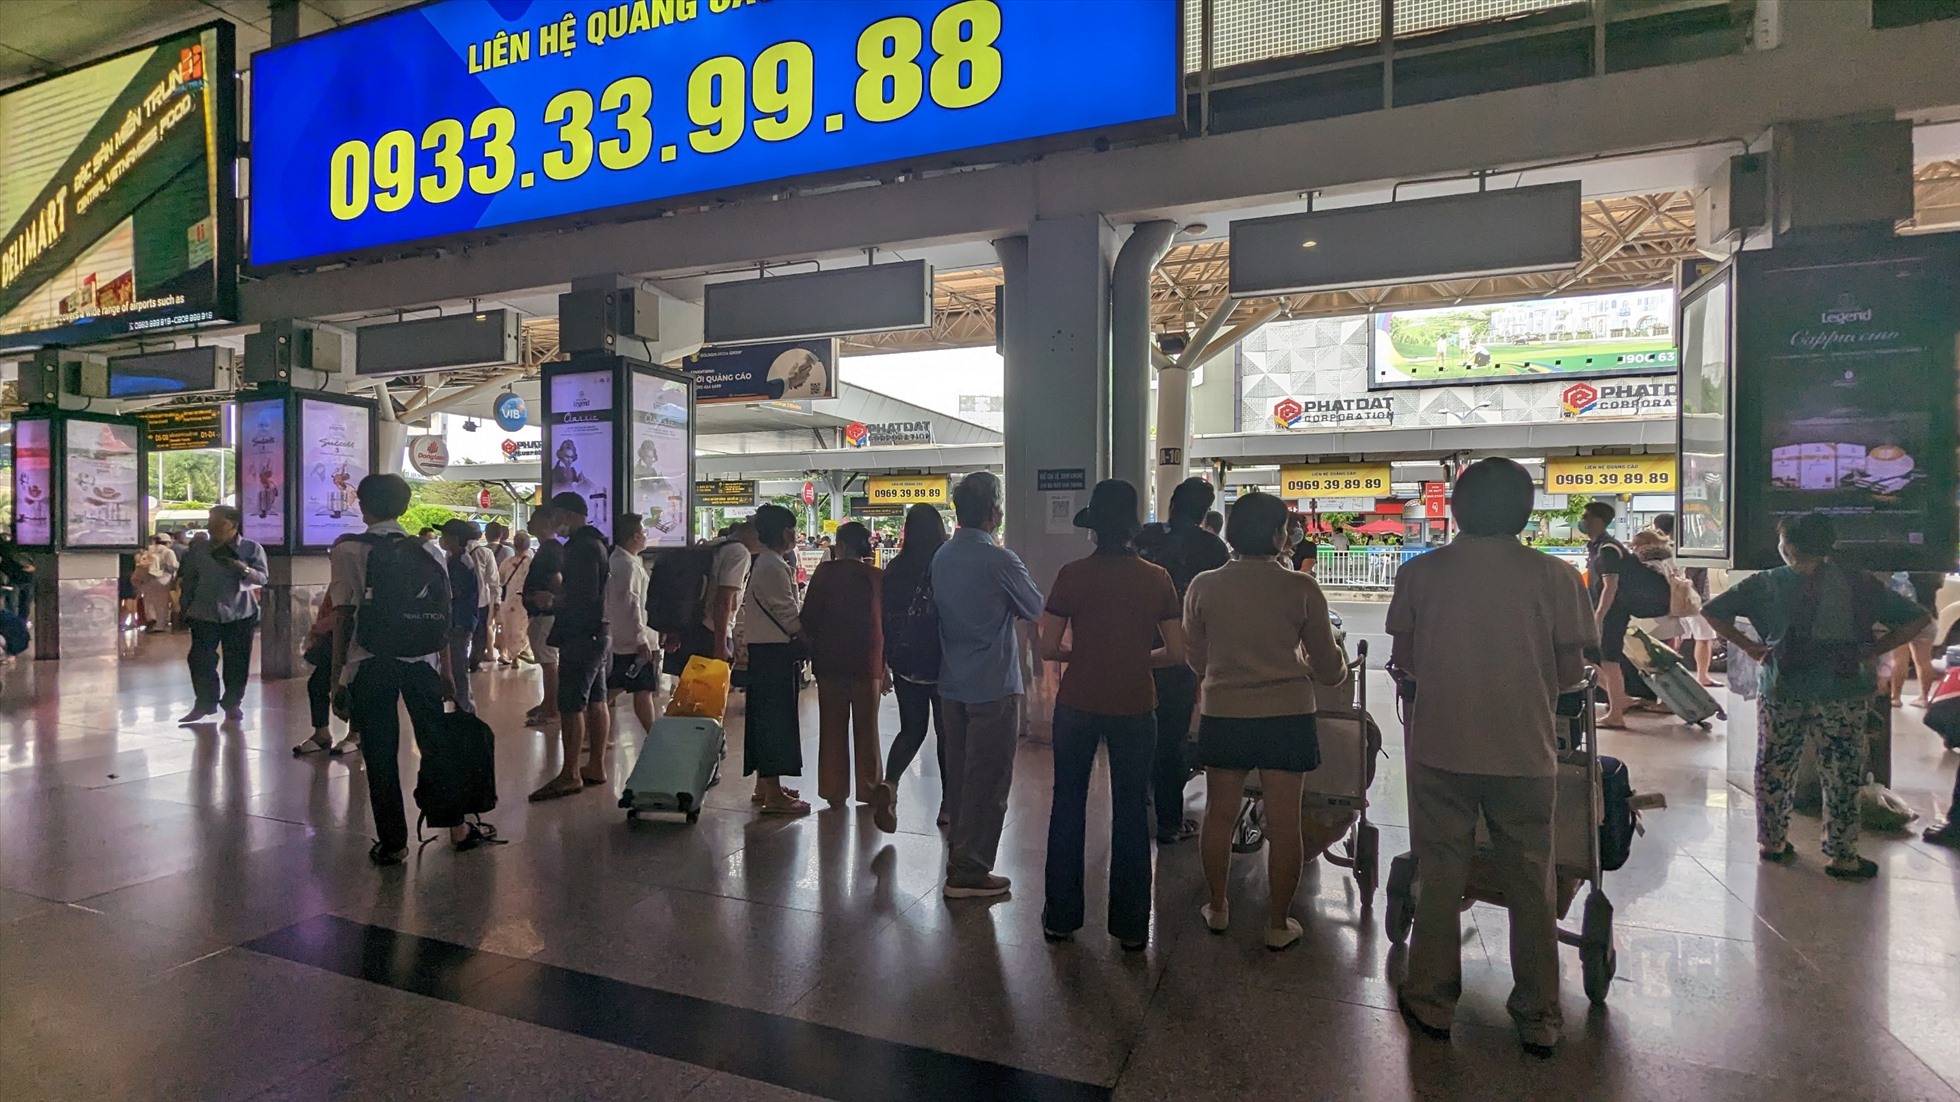 Ghi nhận tại khu vực ga đến trong nước sân bay Tân Sơn Nhất lúc nay, nhiều hành khách lựa chọn trở về TP Hồ Chí Minh sớm, tuy nhiên, không xảy ra tình trạng ùn ứ, quá tải. Dự kiến hôm nay (2.5), Cảng hàng không quốc tế Tân Sơn Nhất đón gần 130.000 lượt khách. Trong đó, gần 62.000 khách đi và gần 68.000 khách đến.